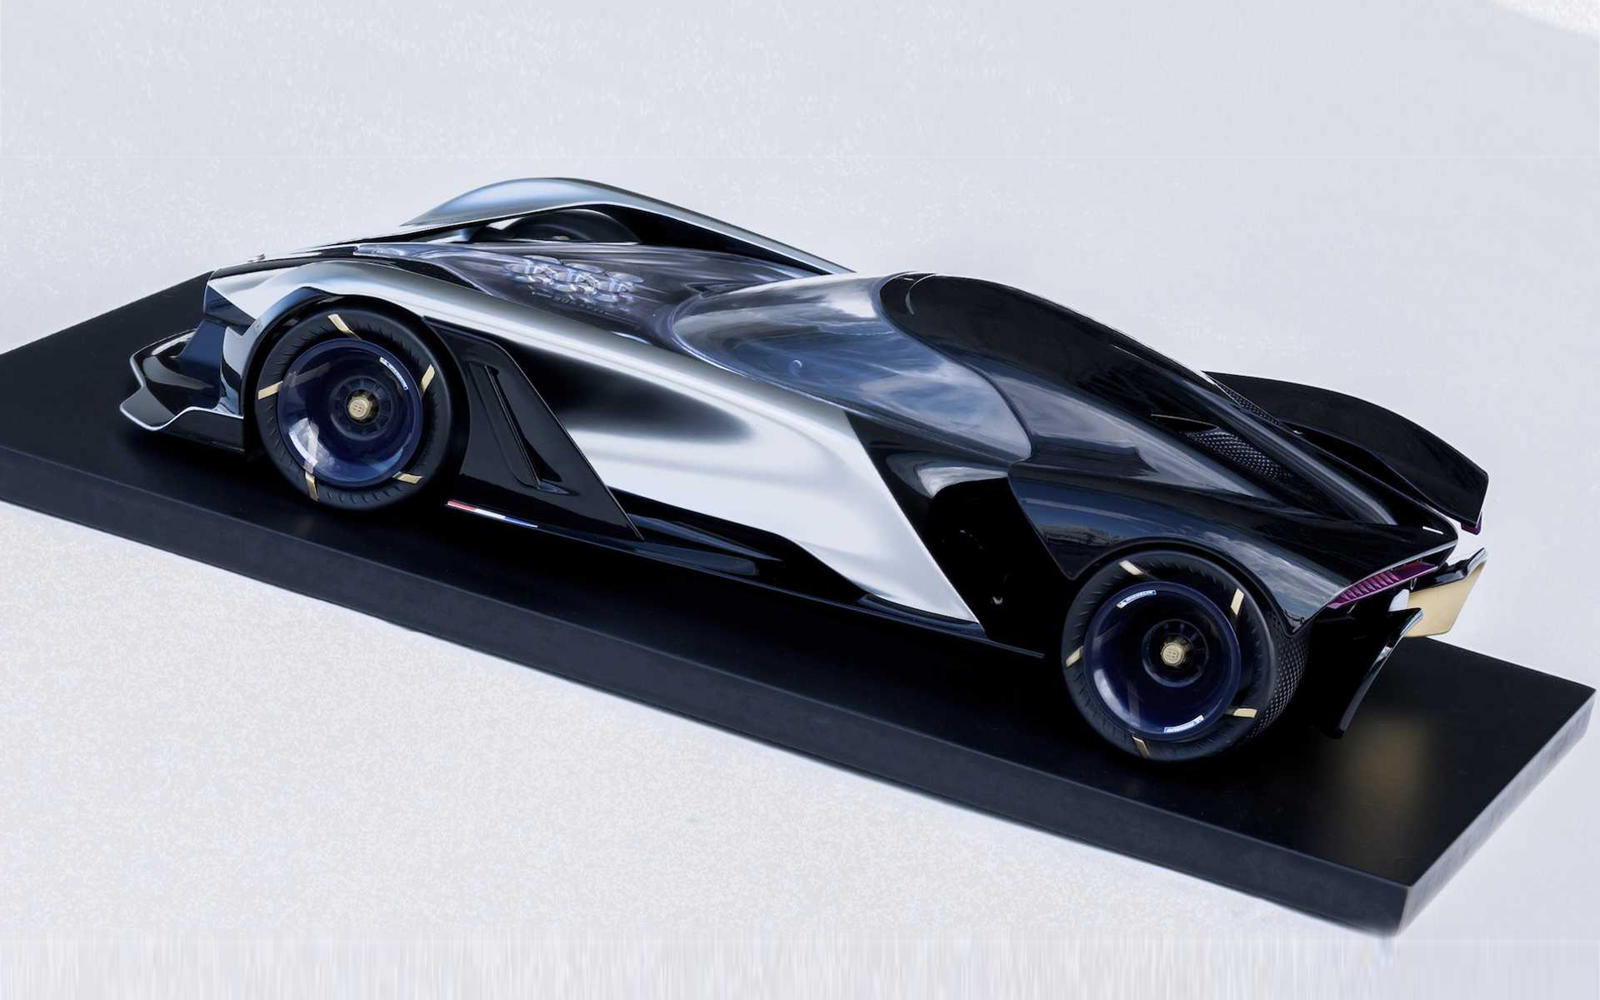 Несмотря на то, что Bugatti в обозримом будущем стремится создавать двигатели внутреннего сгорания, в конечном итоге наступит время, когда автопроизводитель будет вынужден перейти на полностью электрические трансмиссии, чтобы соблюдать нормы выбросов